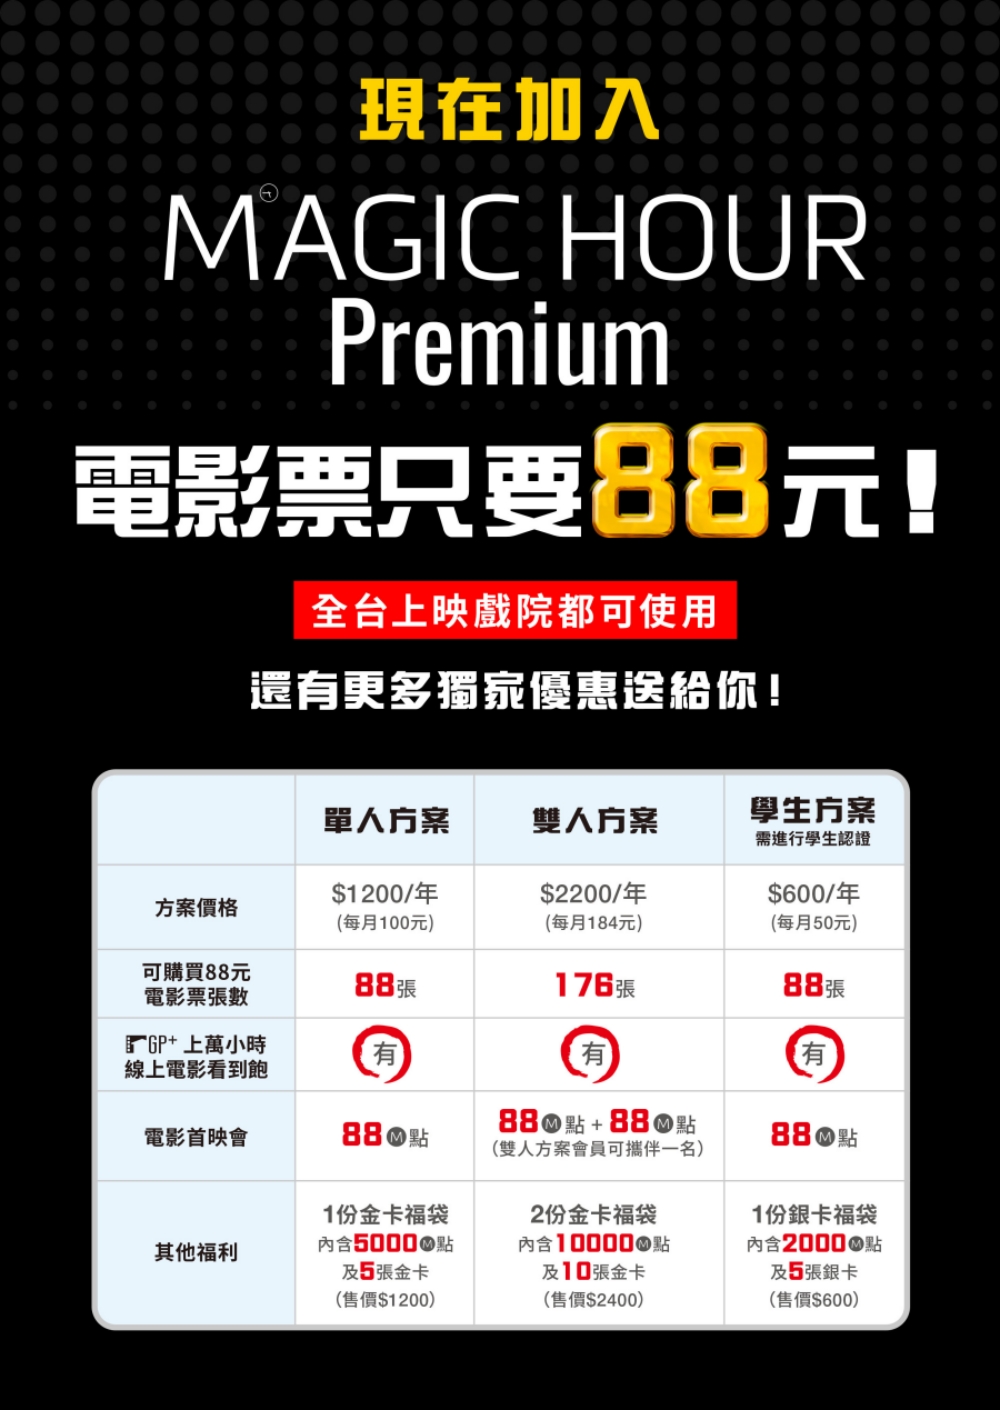 MAGIC HOUR Premium